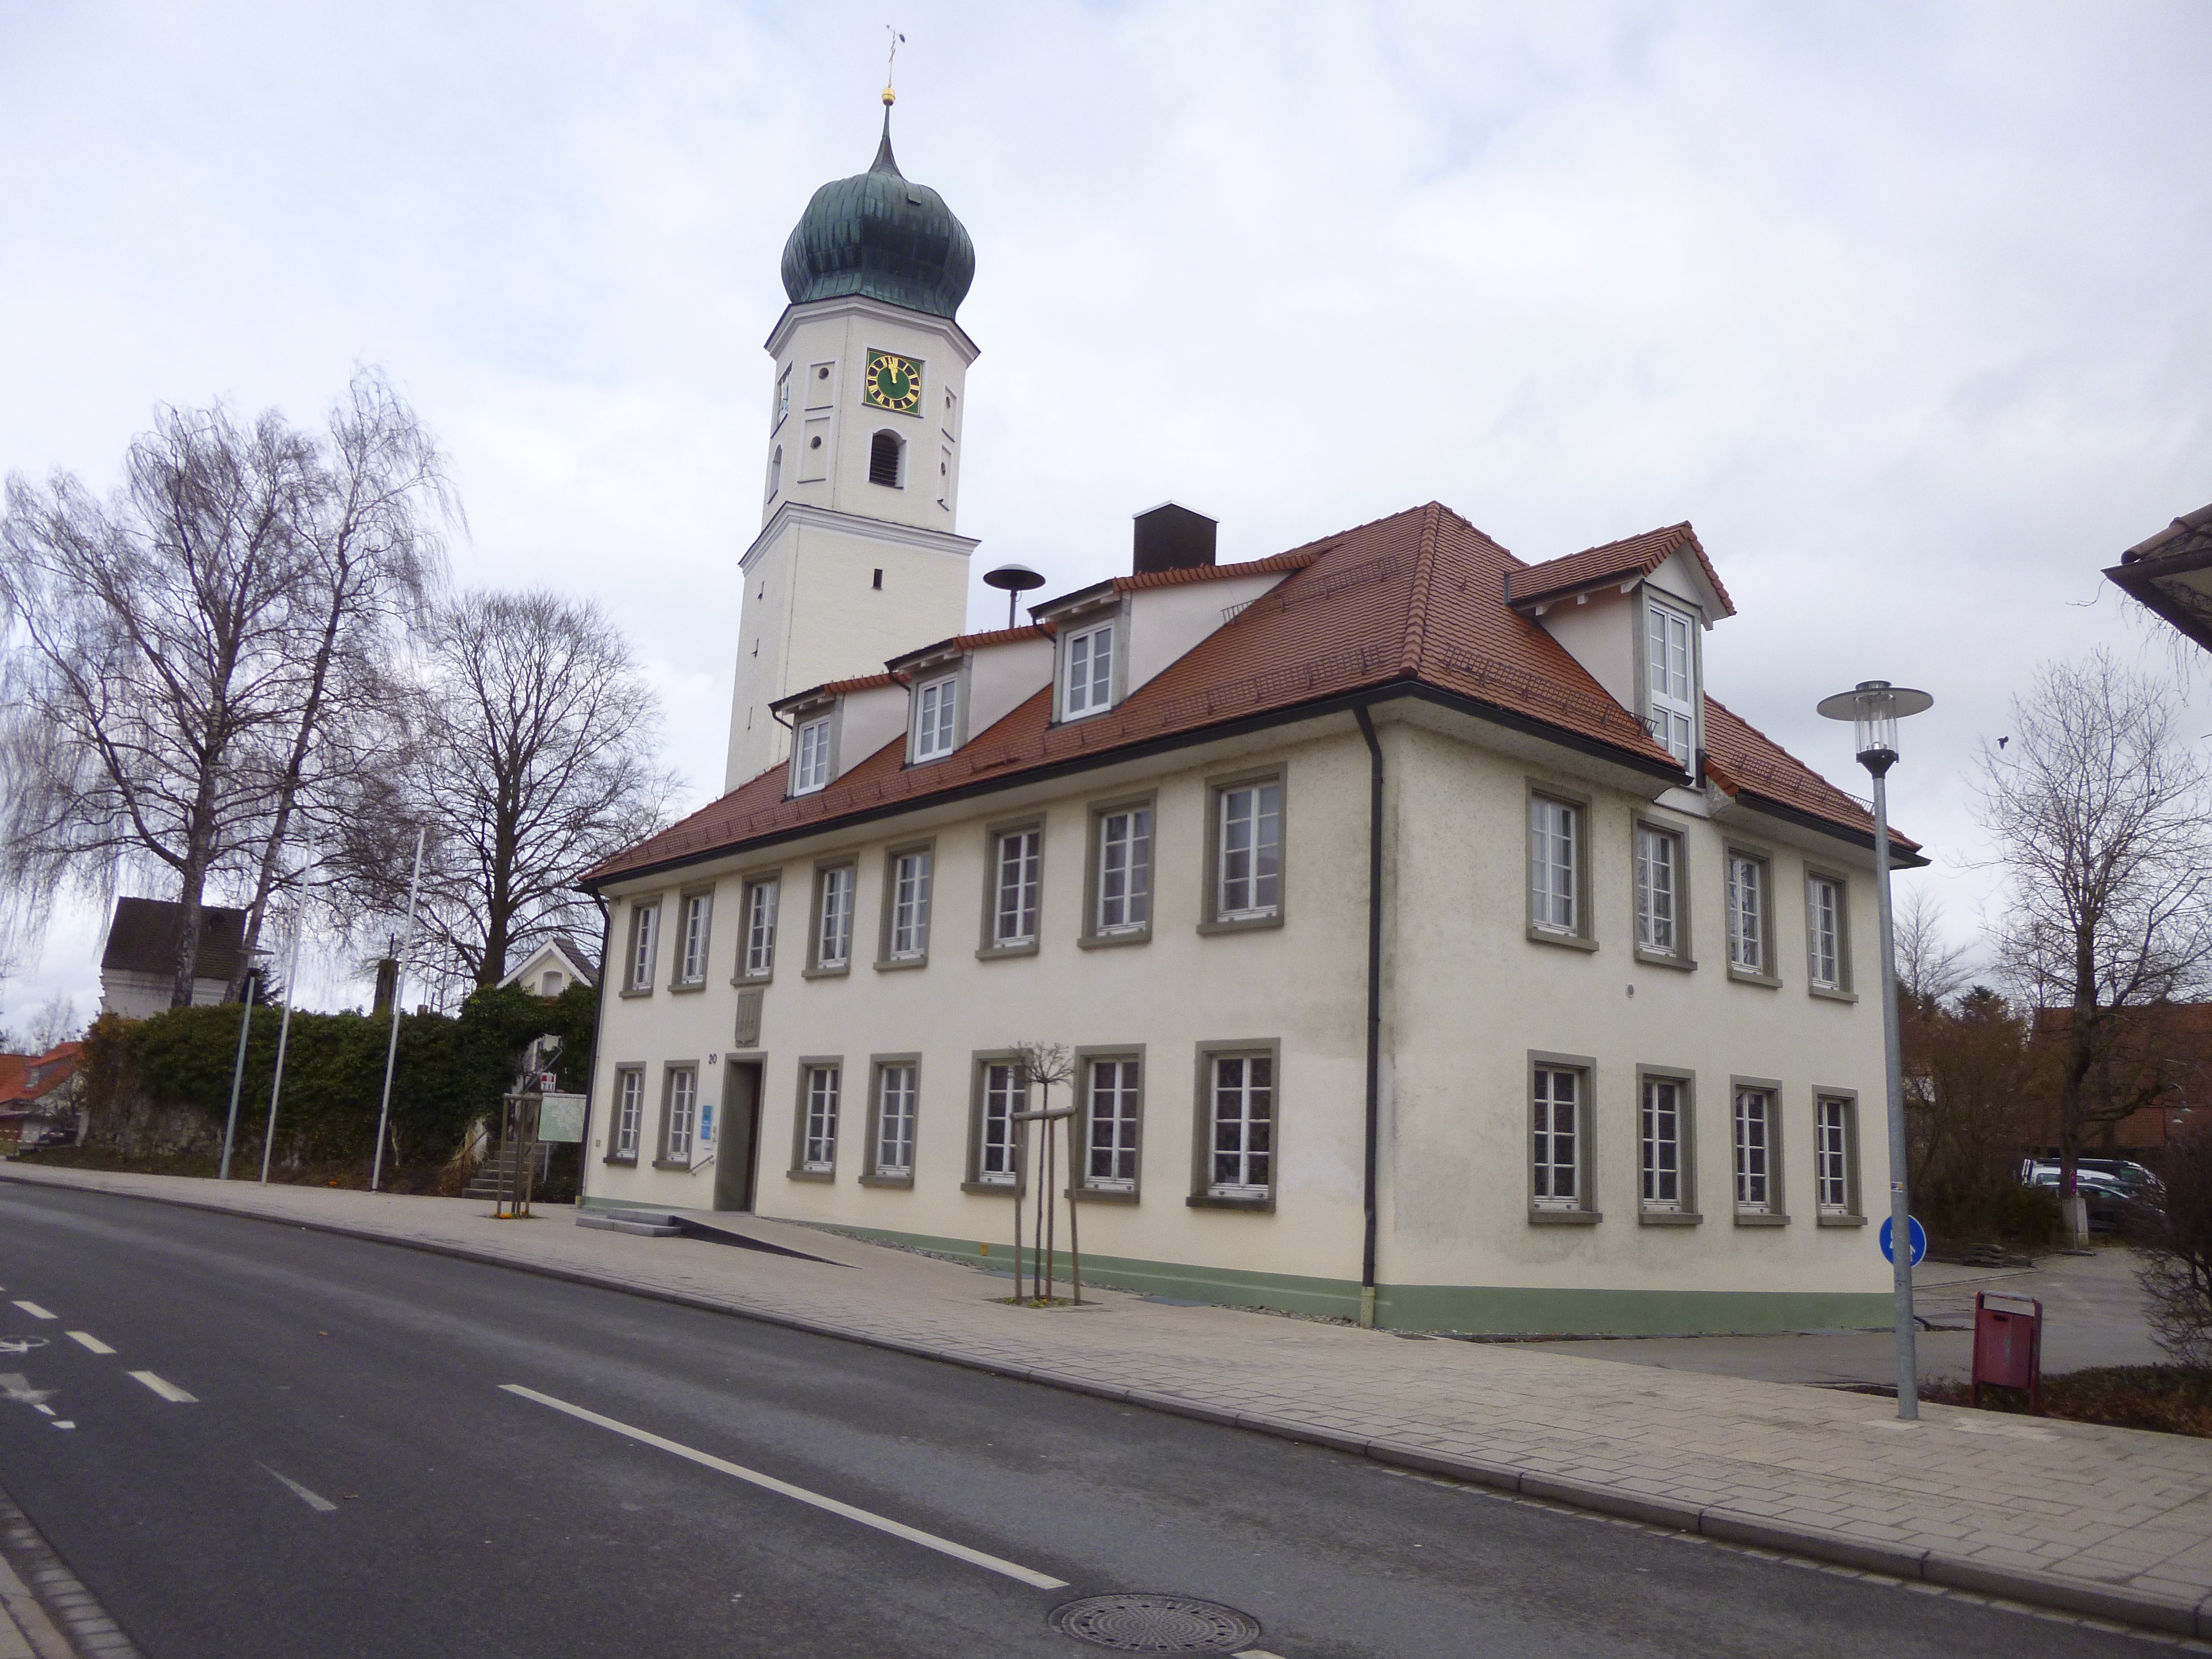  Rathaus mit Kirche 